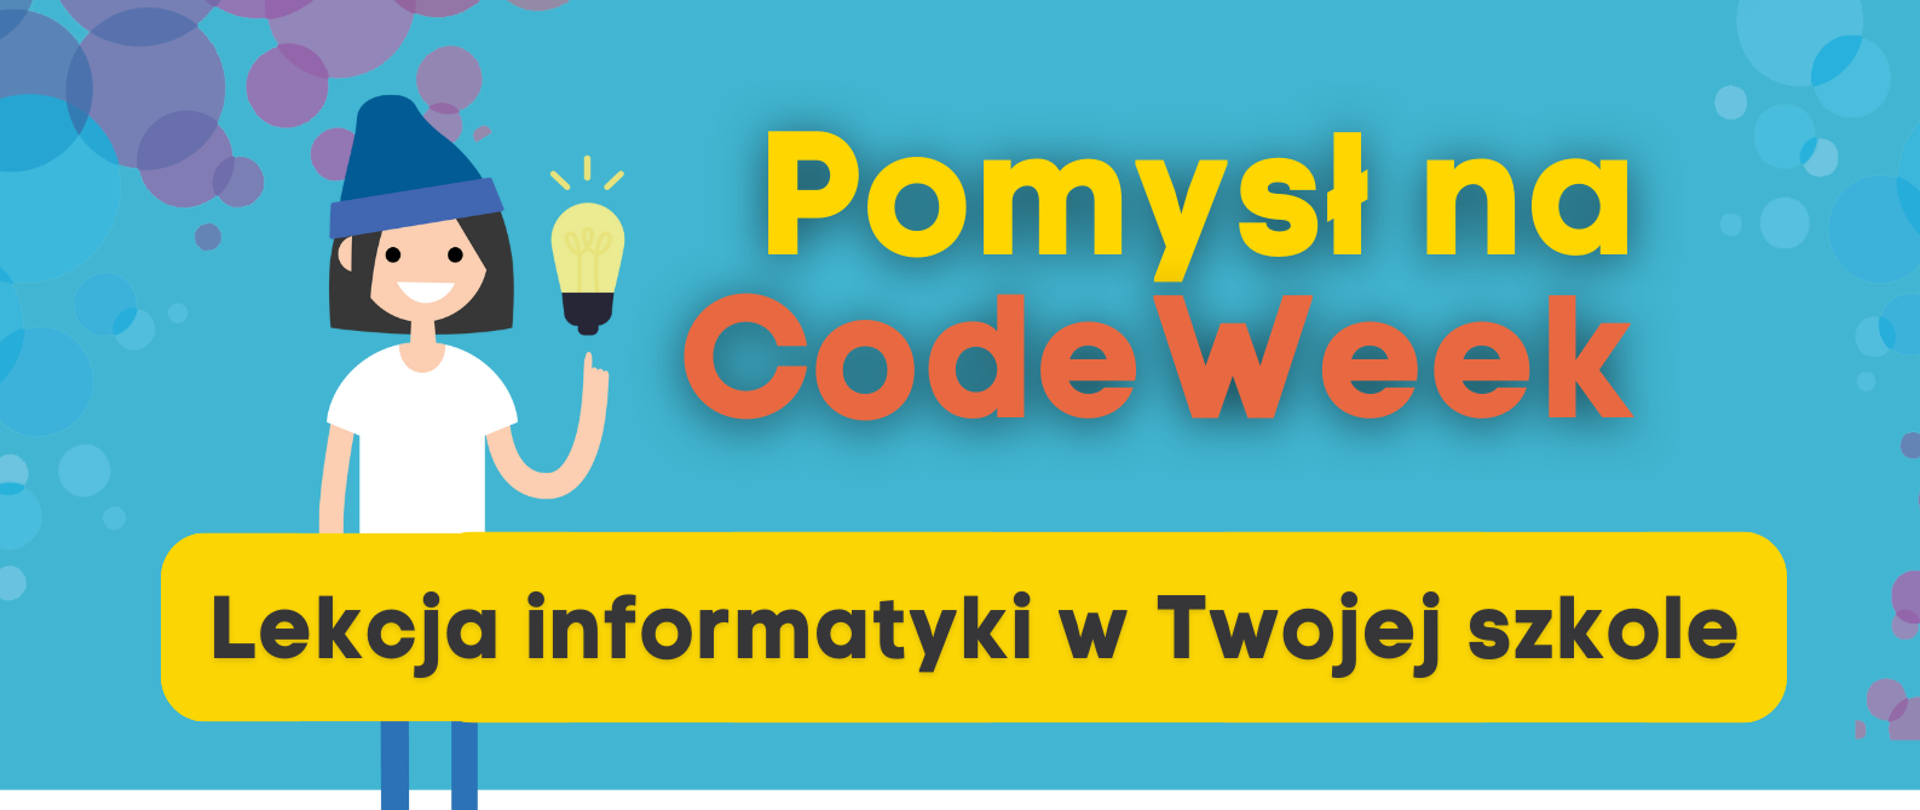 Grafika przedstawia plakat zachęcający do udziału w CodeWeek. W górnej części napis "Pomysł na CodeWeek" oraz uśmiechnięta dziewczynka z żarówką. Pod spodem napis "Lekcja informatyki w Twojej szkole”. Poniżej w formie etykiet przedstawione są kolejne kroki zgłoszenia inicjatywy:
„1. Zaplanuj swoją lekcję informatyki”,
„2. W trakcie zajęć opowiedz uczniom o CodeWeek”
„3. Zgłoś swoje wydarzenie na codeweek.eu/add i zostań częścią codeweekowej społeczności "
"4. Pobierz certyfikat".
W dolnej części tekstu kod QR prowadzący do strony www.koduj.gov.pl, adresy Facebook CodeWeekPL, Instagram codeweekpl i adres e-mailowy programowanie@mc.gov.pl oraz logotypy Funduszy Europejskich, KPRM, NASK i Unii Europejskiej. Powyżej krótka informacja o CodeWeek "CodeWeek to społeczna inicjatywa, w ramach której europejskie państwa „ścigają się” w liczbie zorganizowanych wydarzeń związanych z programowaniem. W 2021 roku Europejski Tydzień Kodowania obchodzimy w dniach 9-24 października, ale wydarzenia związane z promocją programowania możesz zgłaszać cały rok.".
